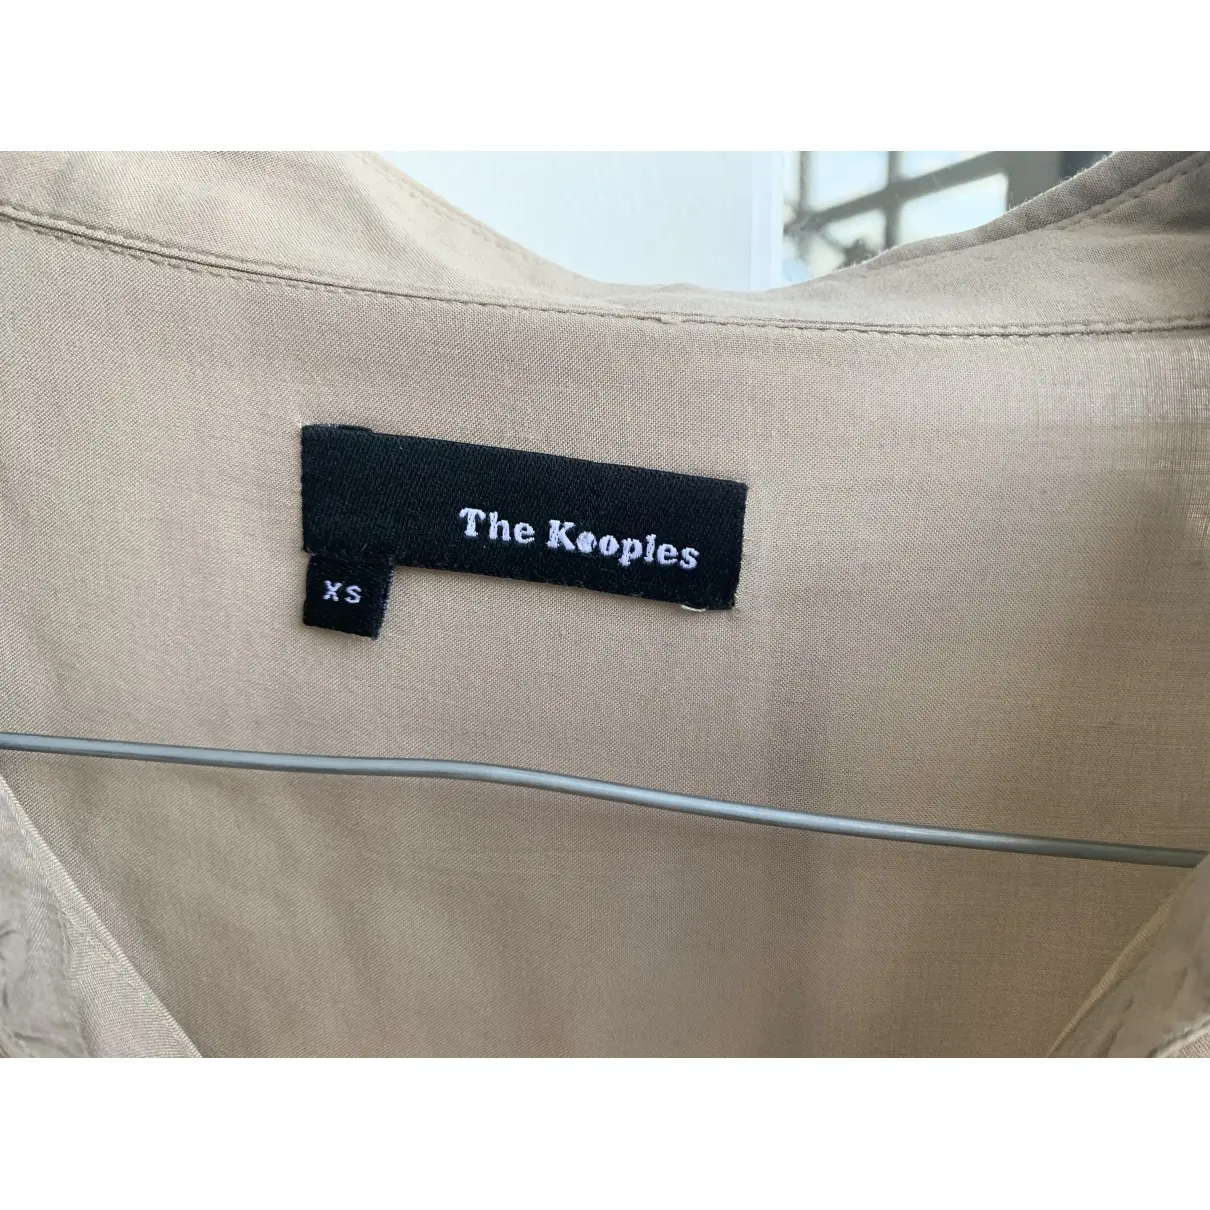 Buy The Kooples Blouse online